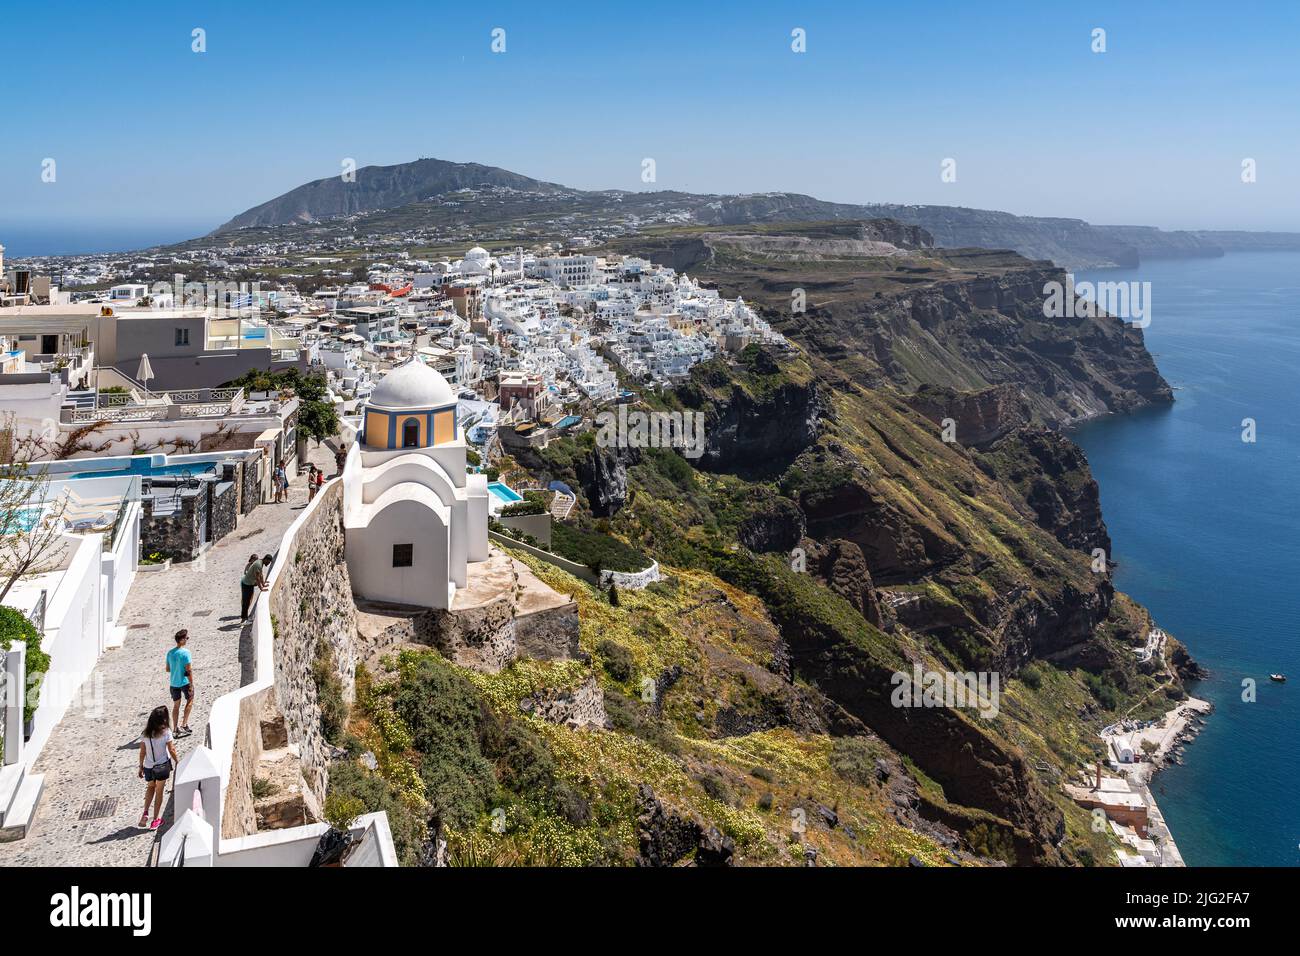 Vista panoramica di Fira, la città principale di Santorini, situato sulle scogliere che si affacciano sul Mar Egeo, Grecia Foto Stock